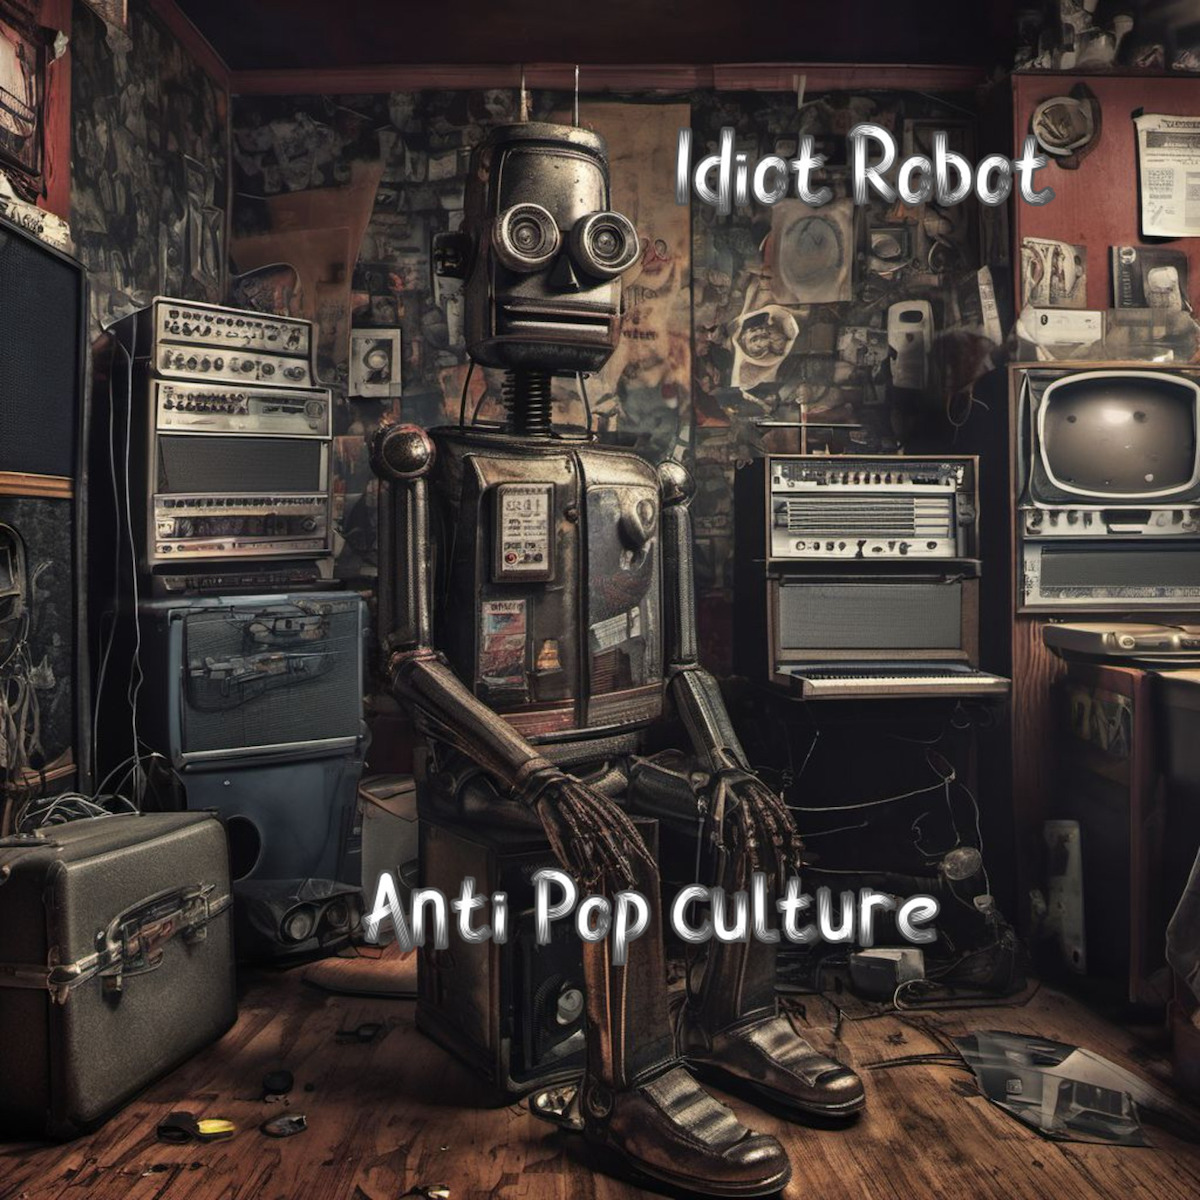 ALBUM REVIEW: Anti Pop Culture by Idiot Robot